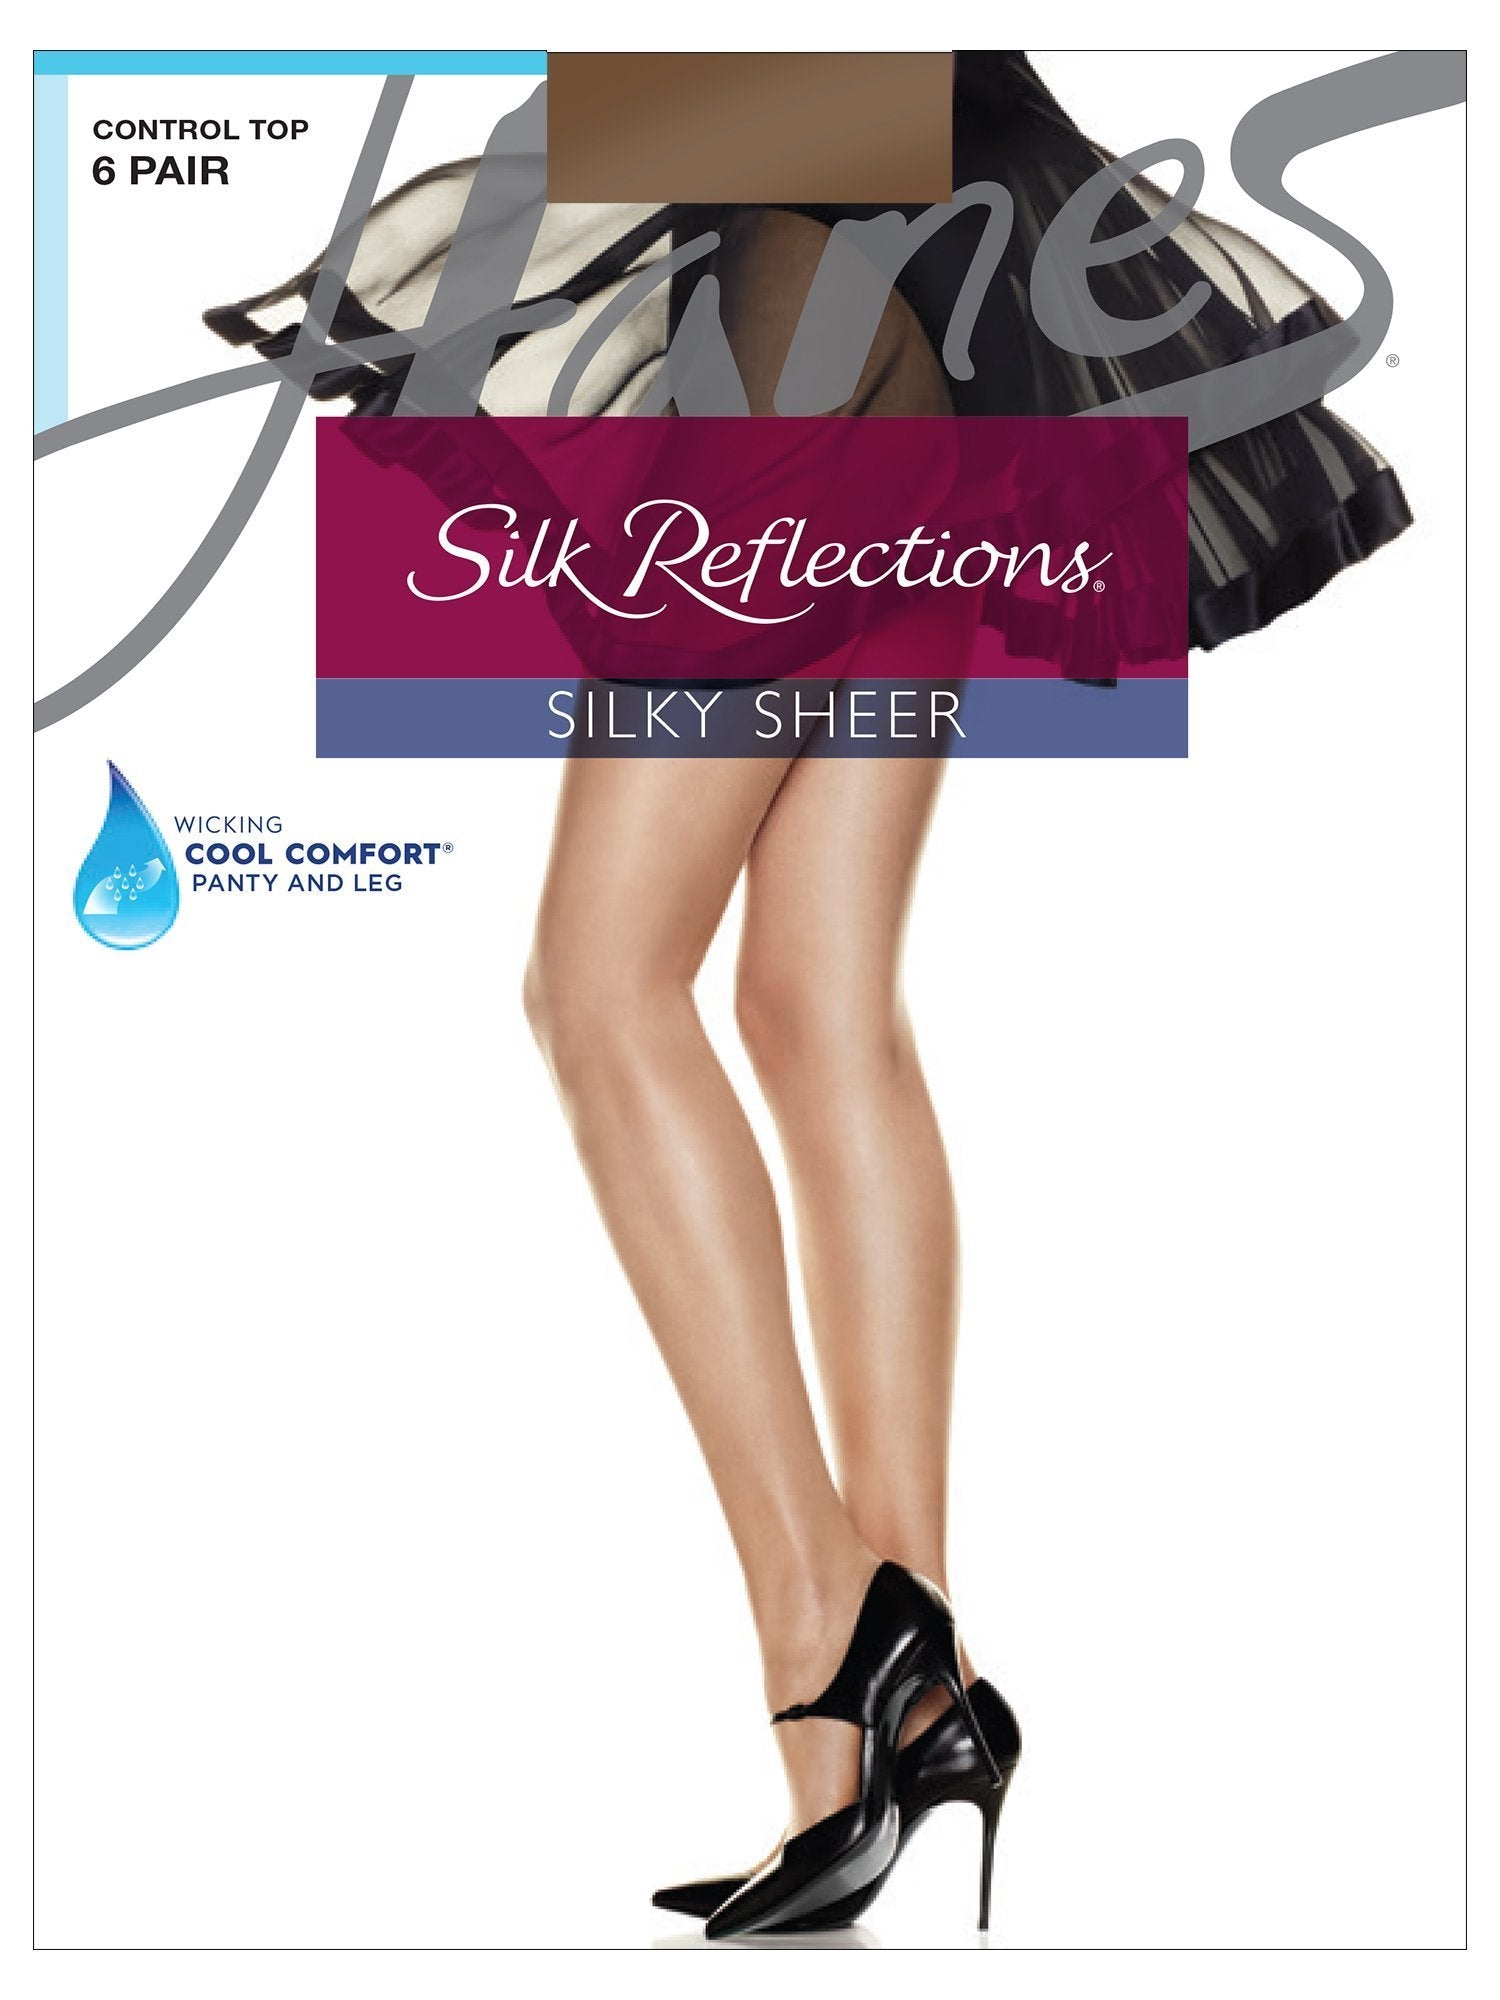  Hanes Silk Reflections 6-Pack Sheer-Toe Silky Sheer Pantyhose